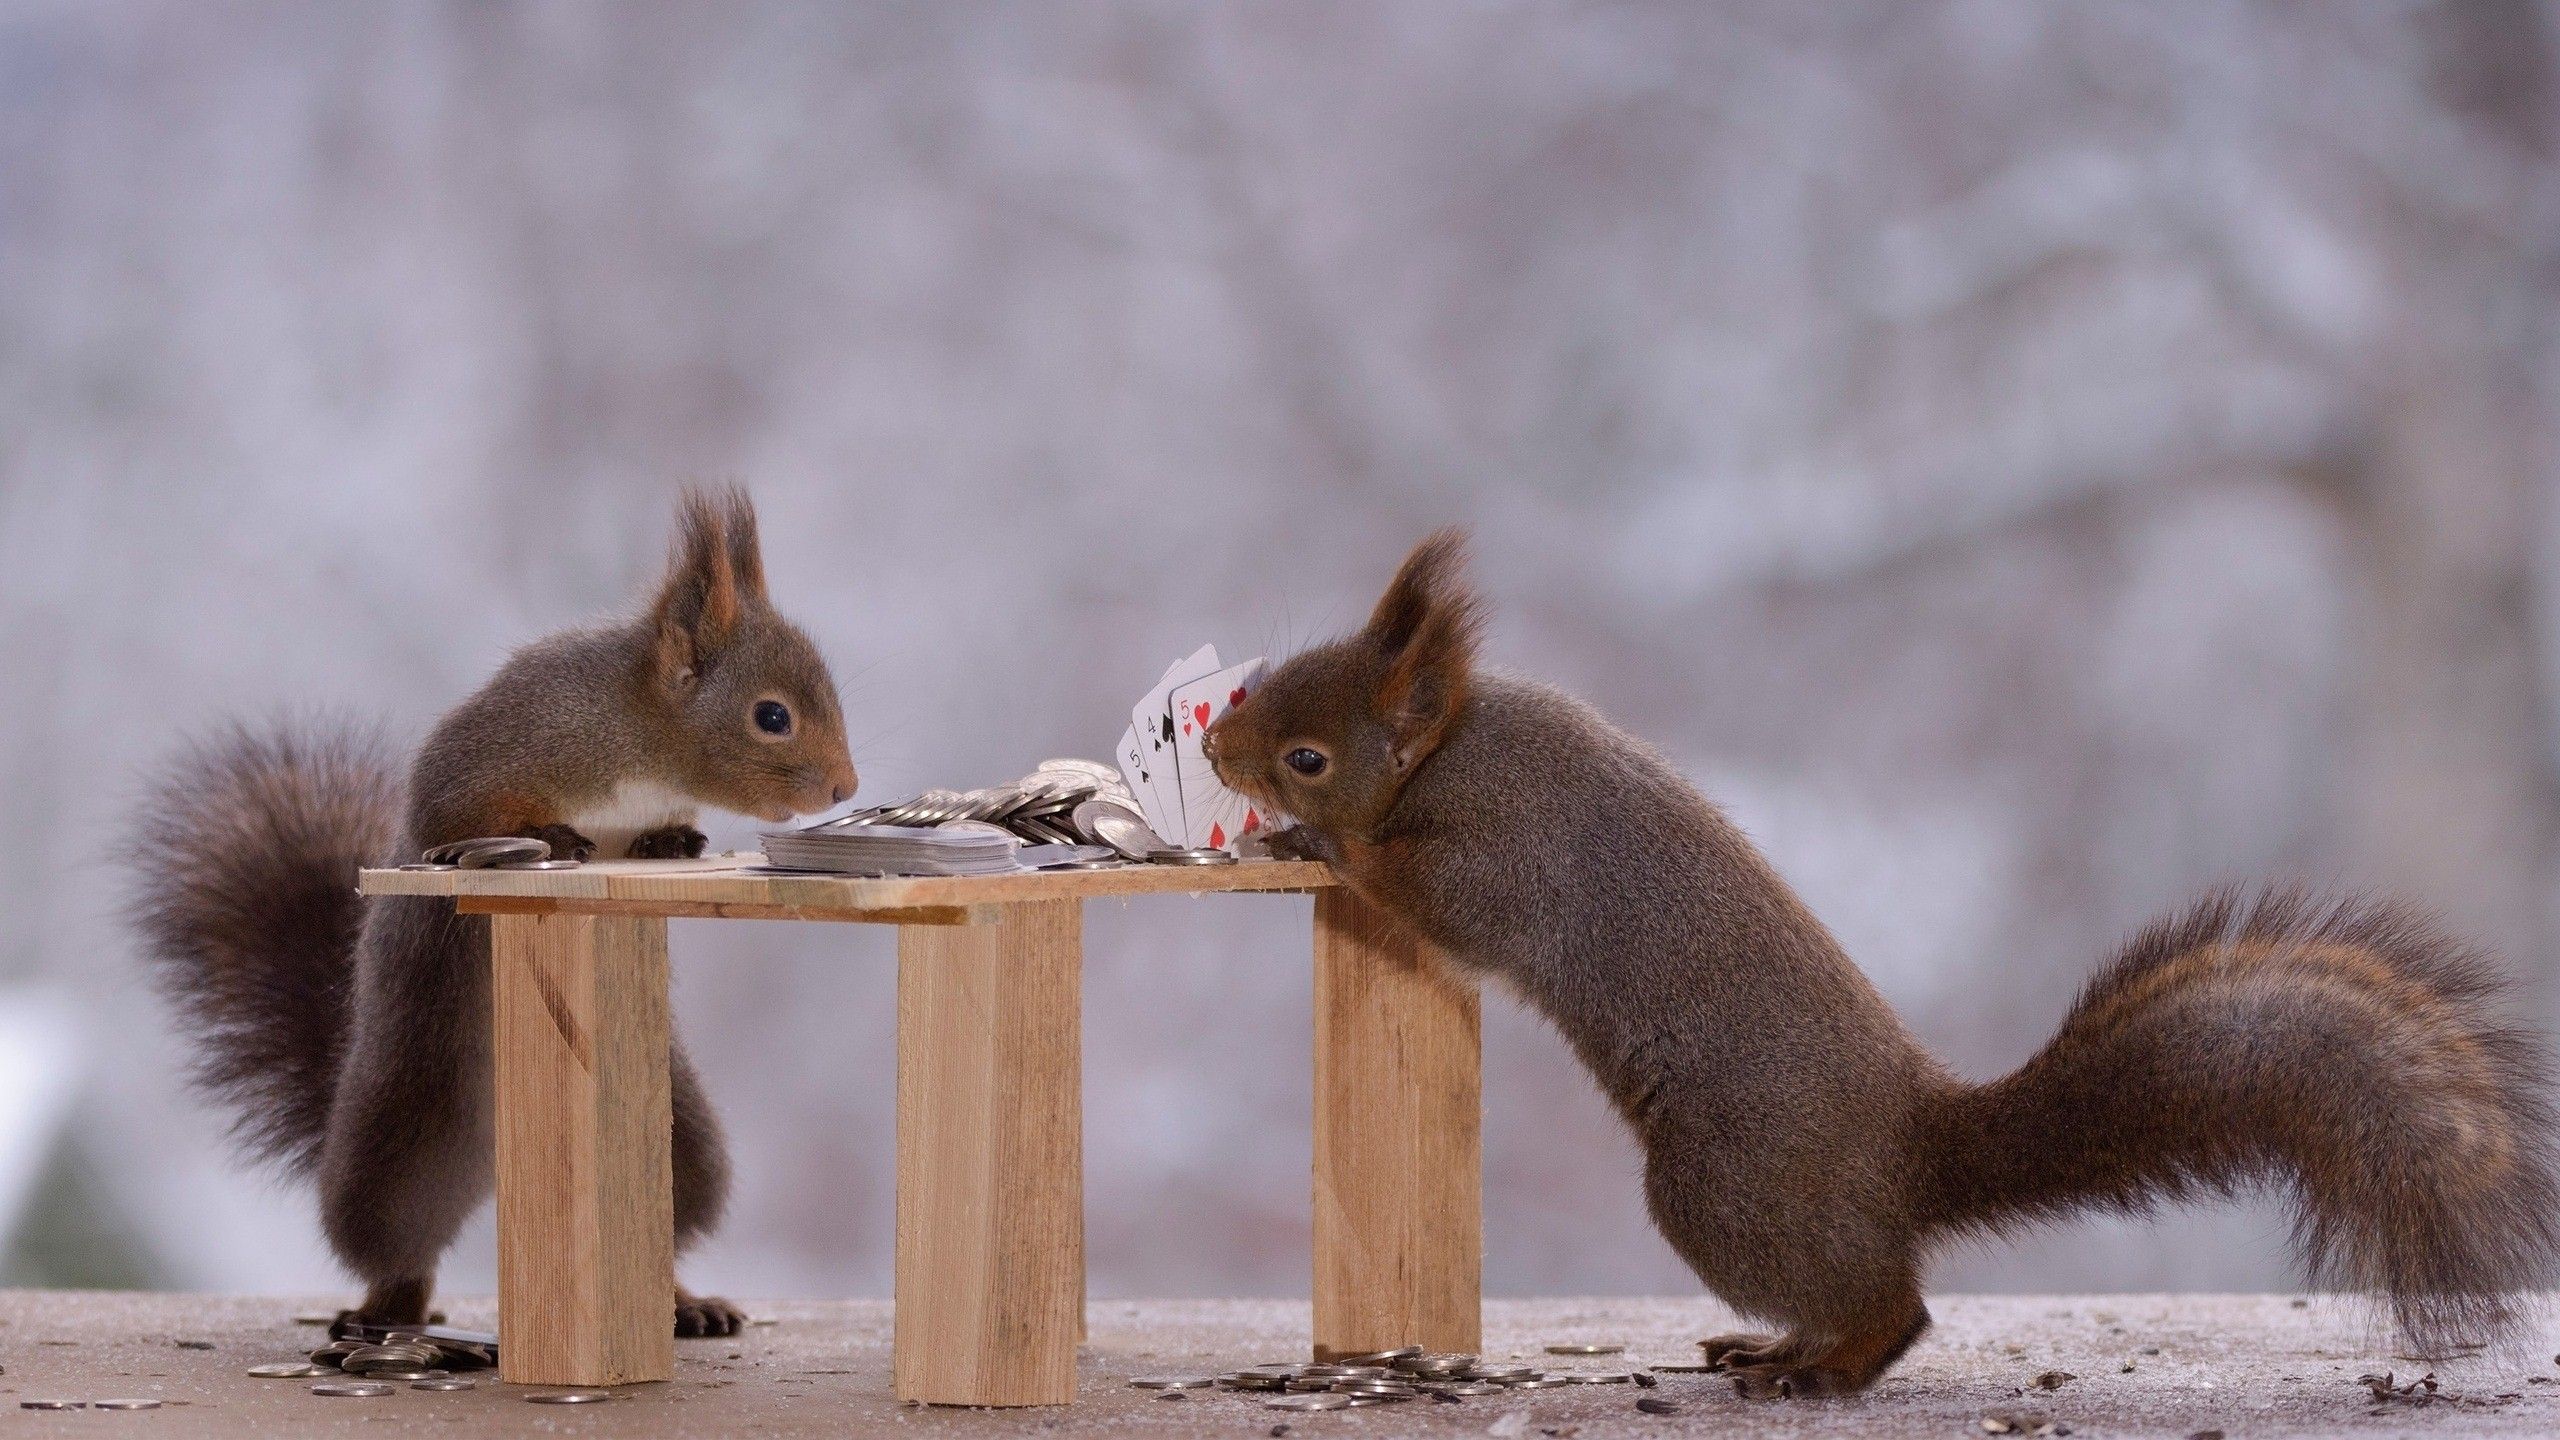 تصویر بسیار جالب و دیدنی از دوتا سنجاب قشنگ با کیفیت عالی 